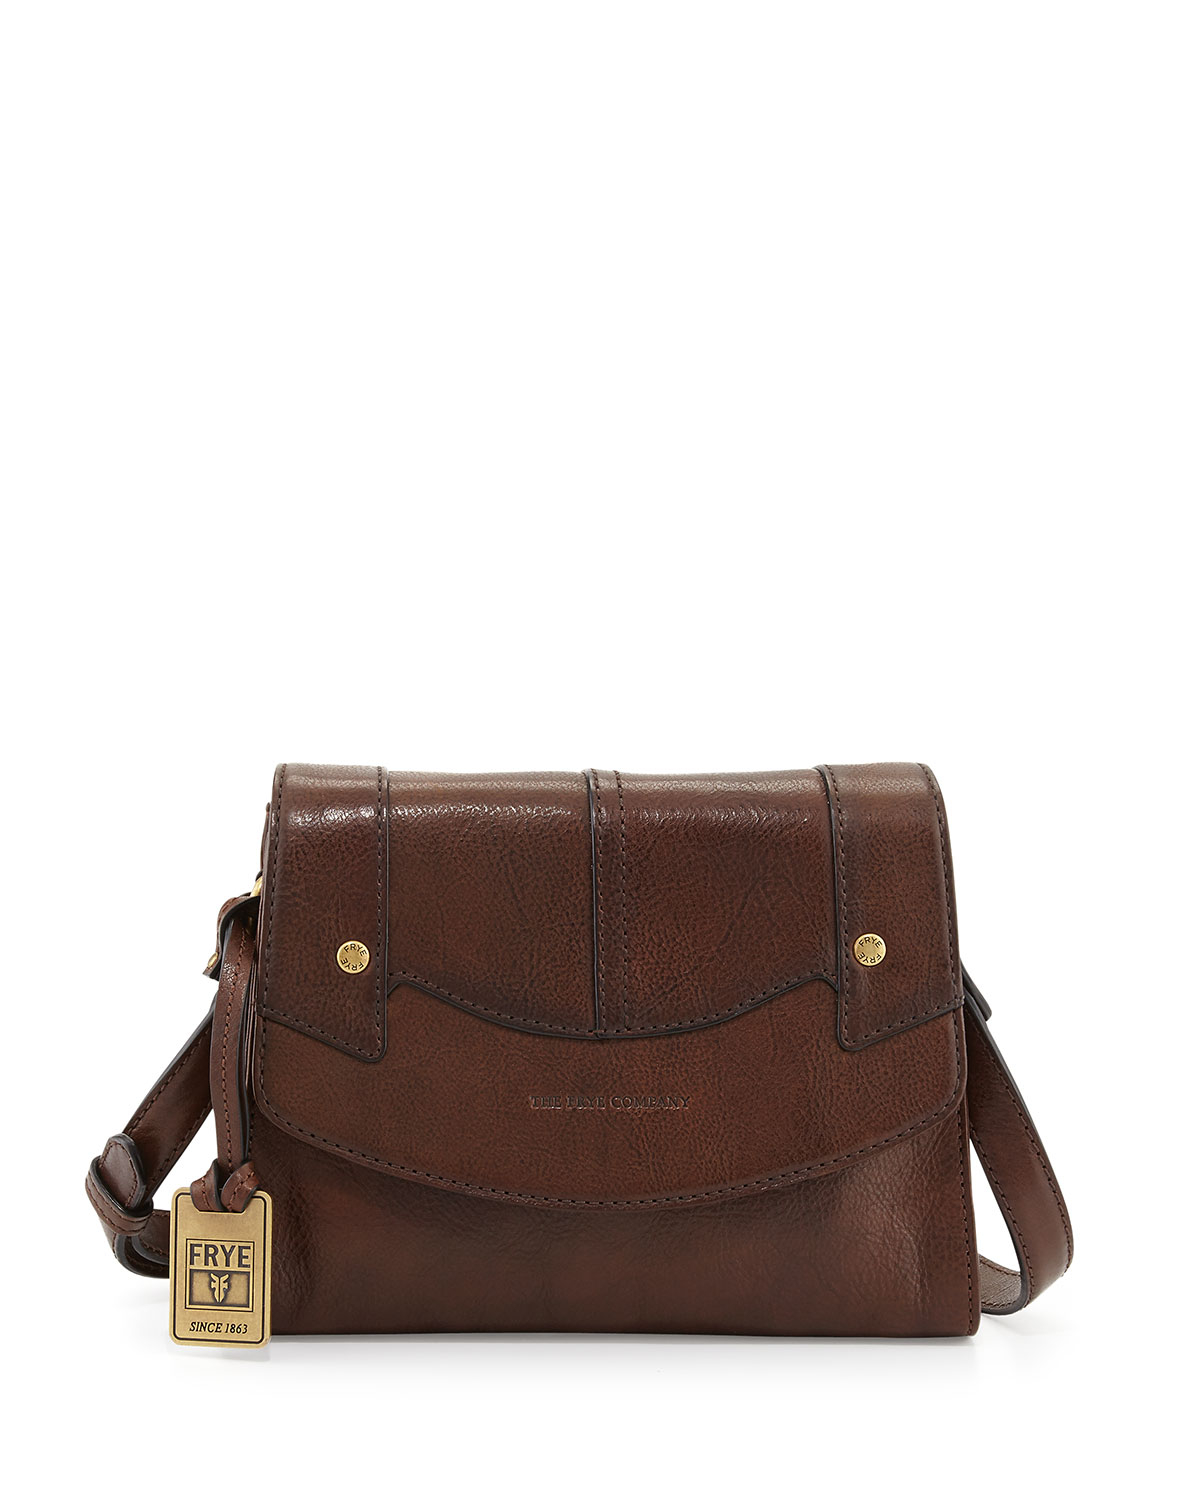 Frye Renee Small Leather Crossbody Bag in Dark Brown (Brown) - Lyst